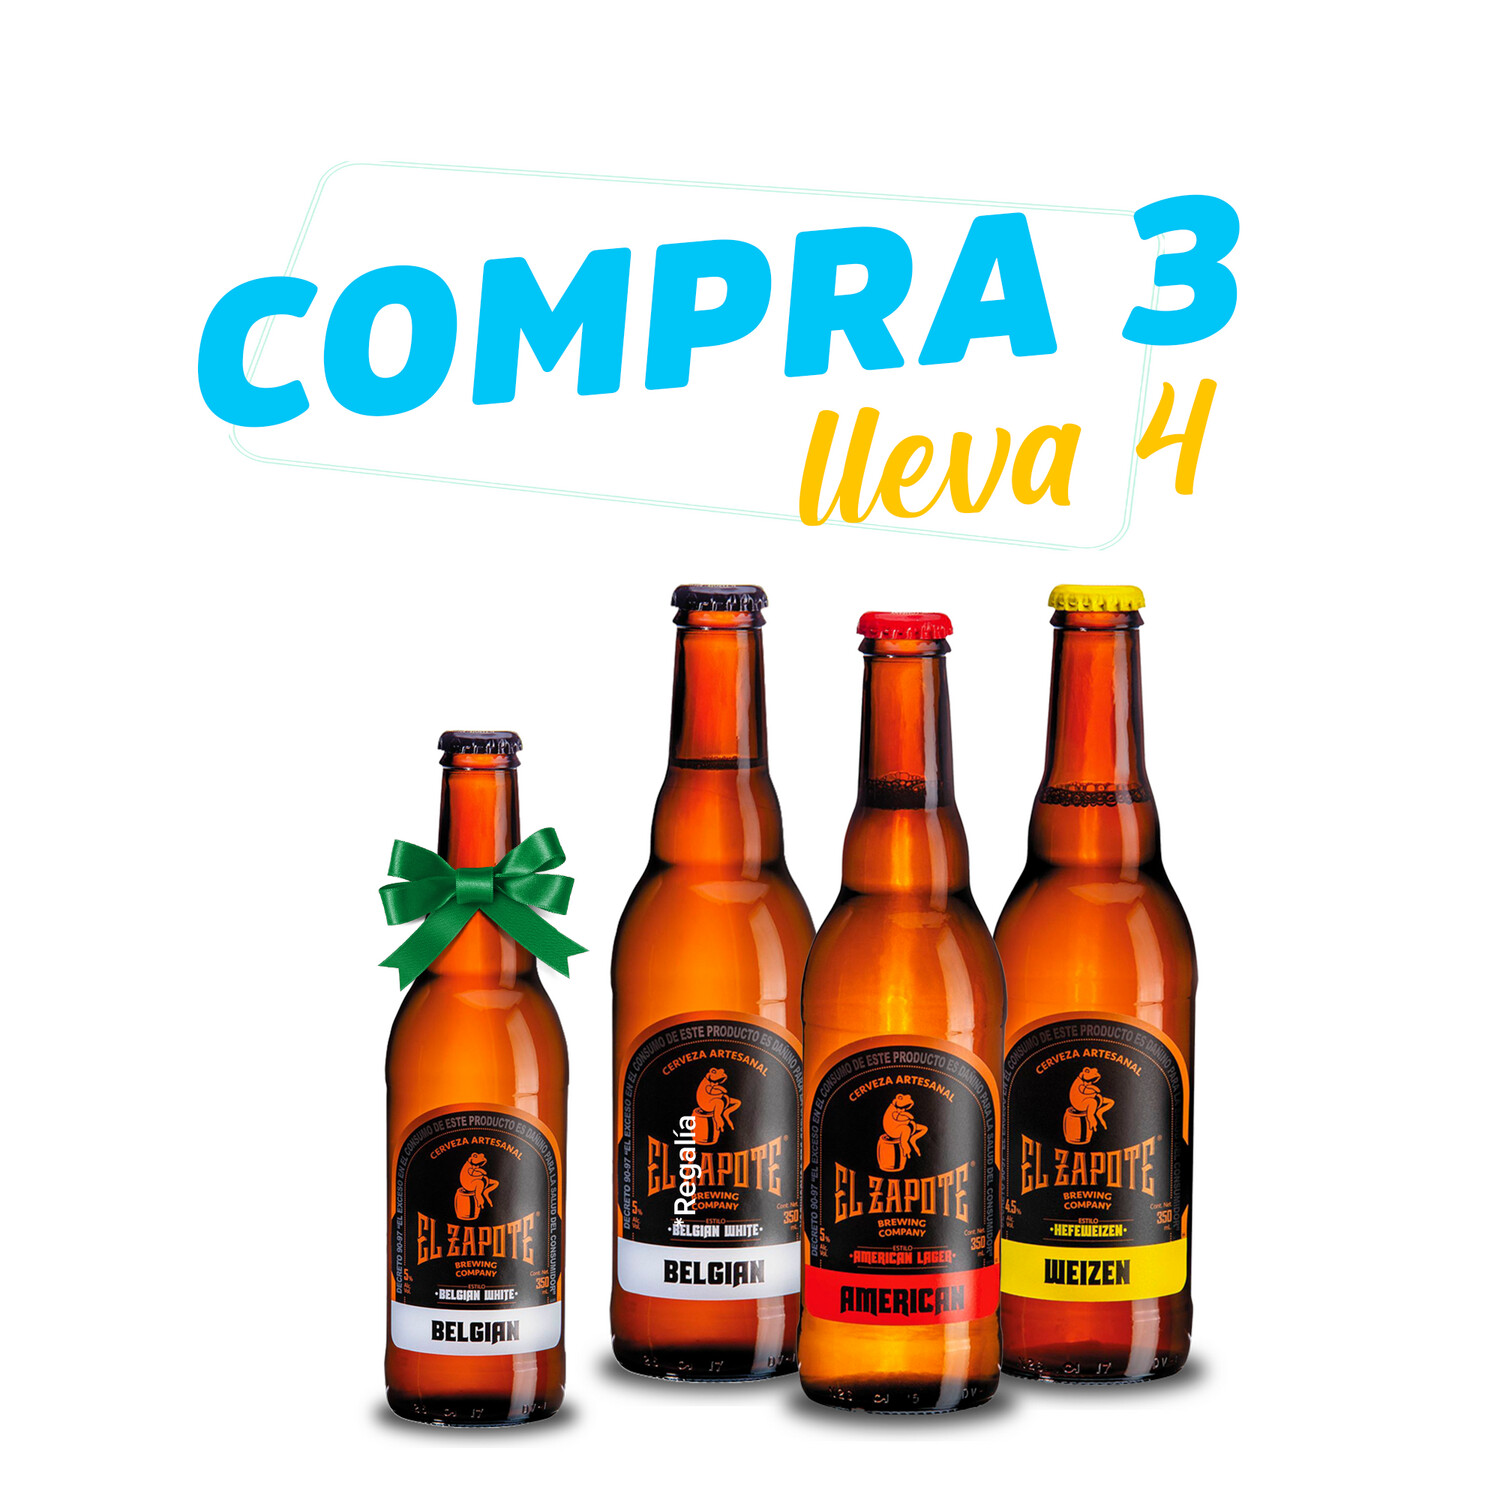 Compra 3 lleva 4 - Cerveza El Zapote